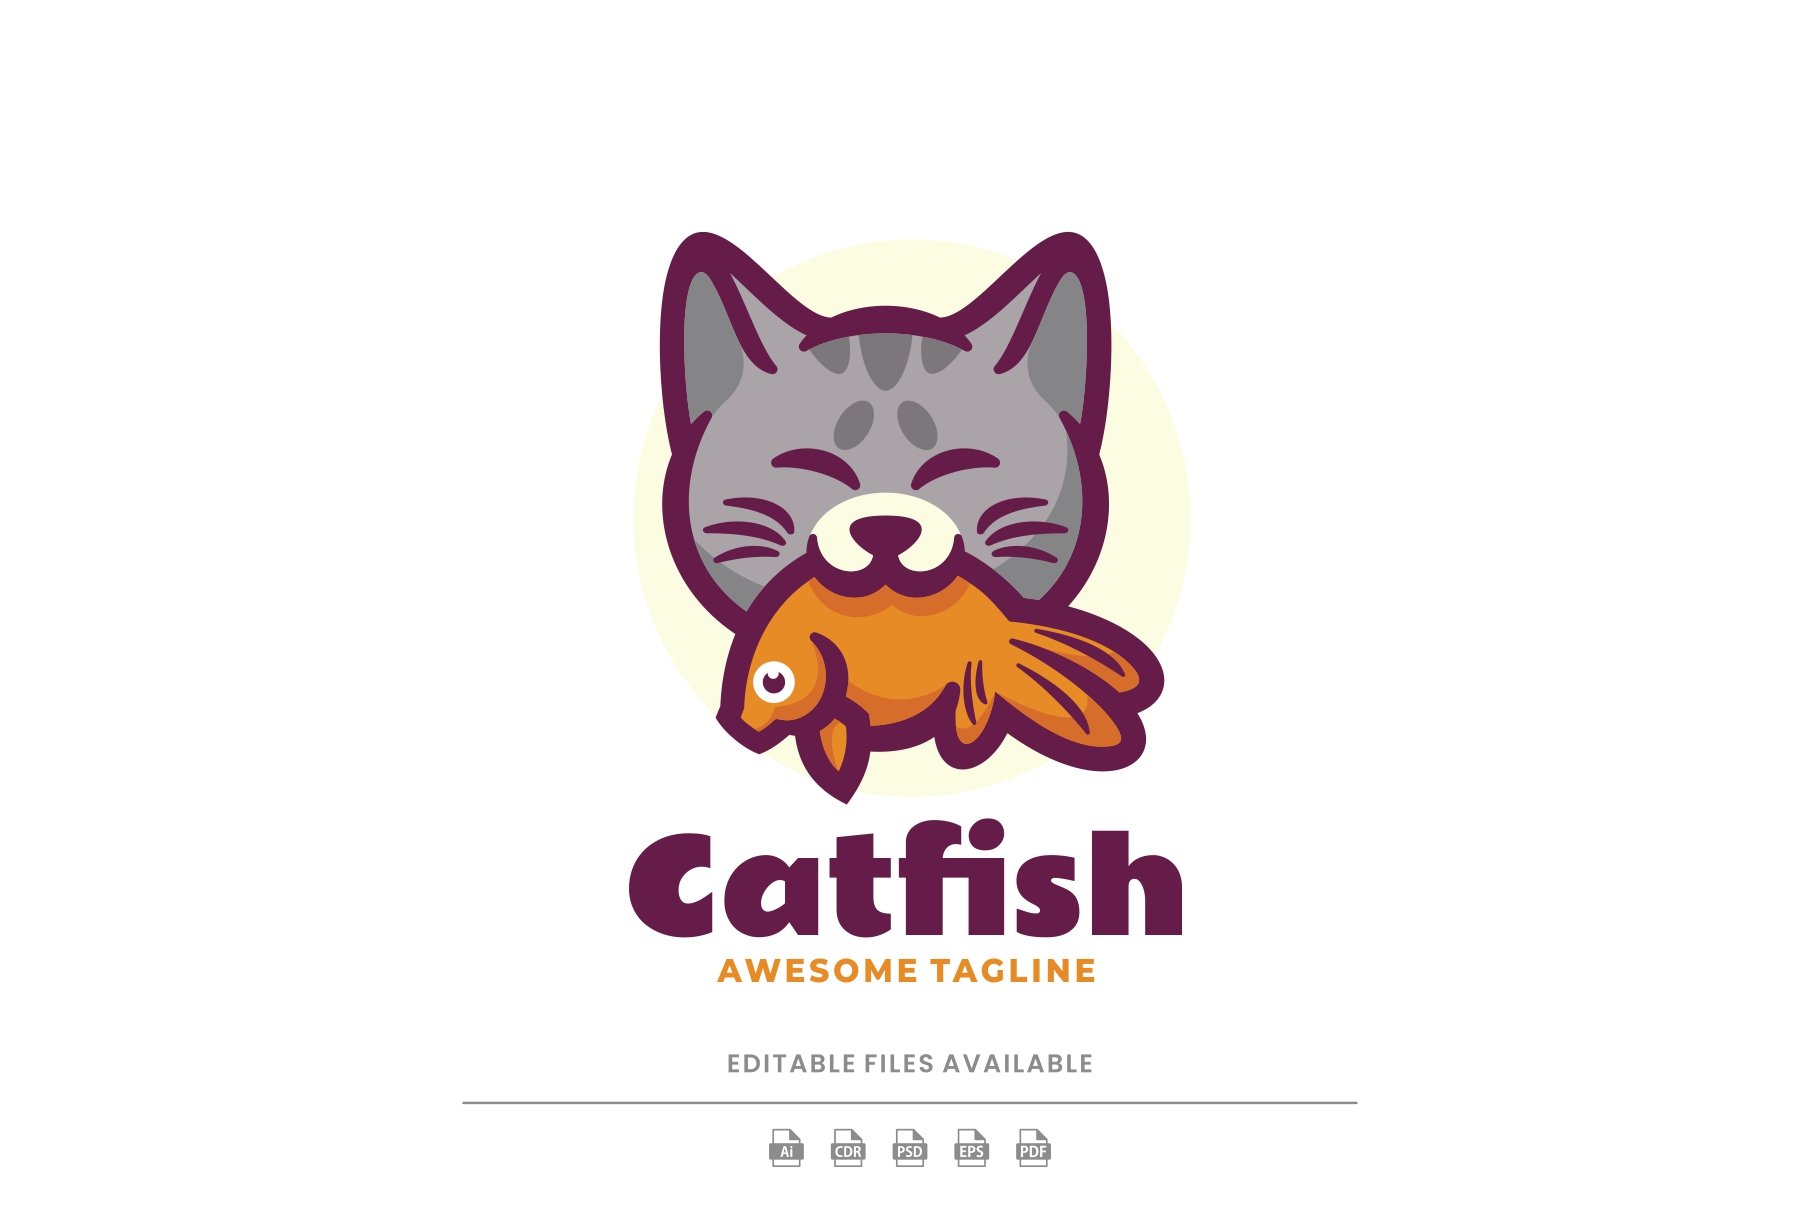 Cat Fish Mascot Cartoon Logo cover image.